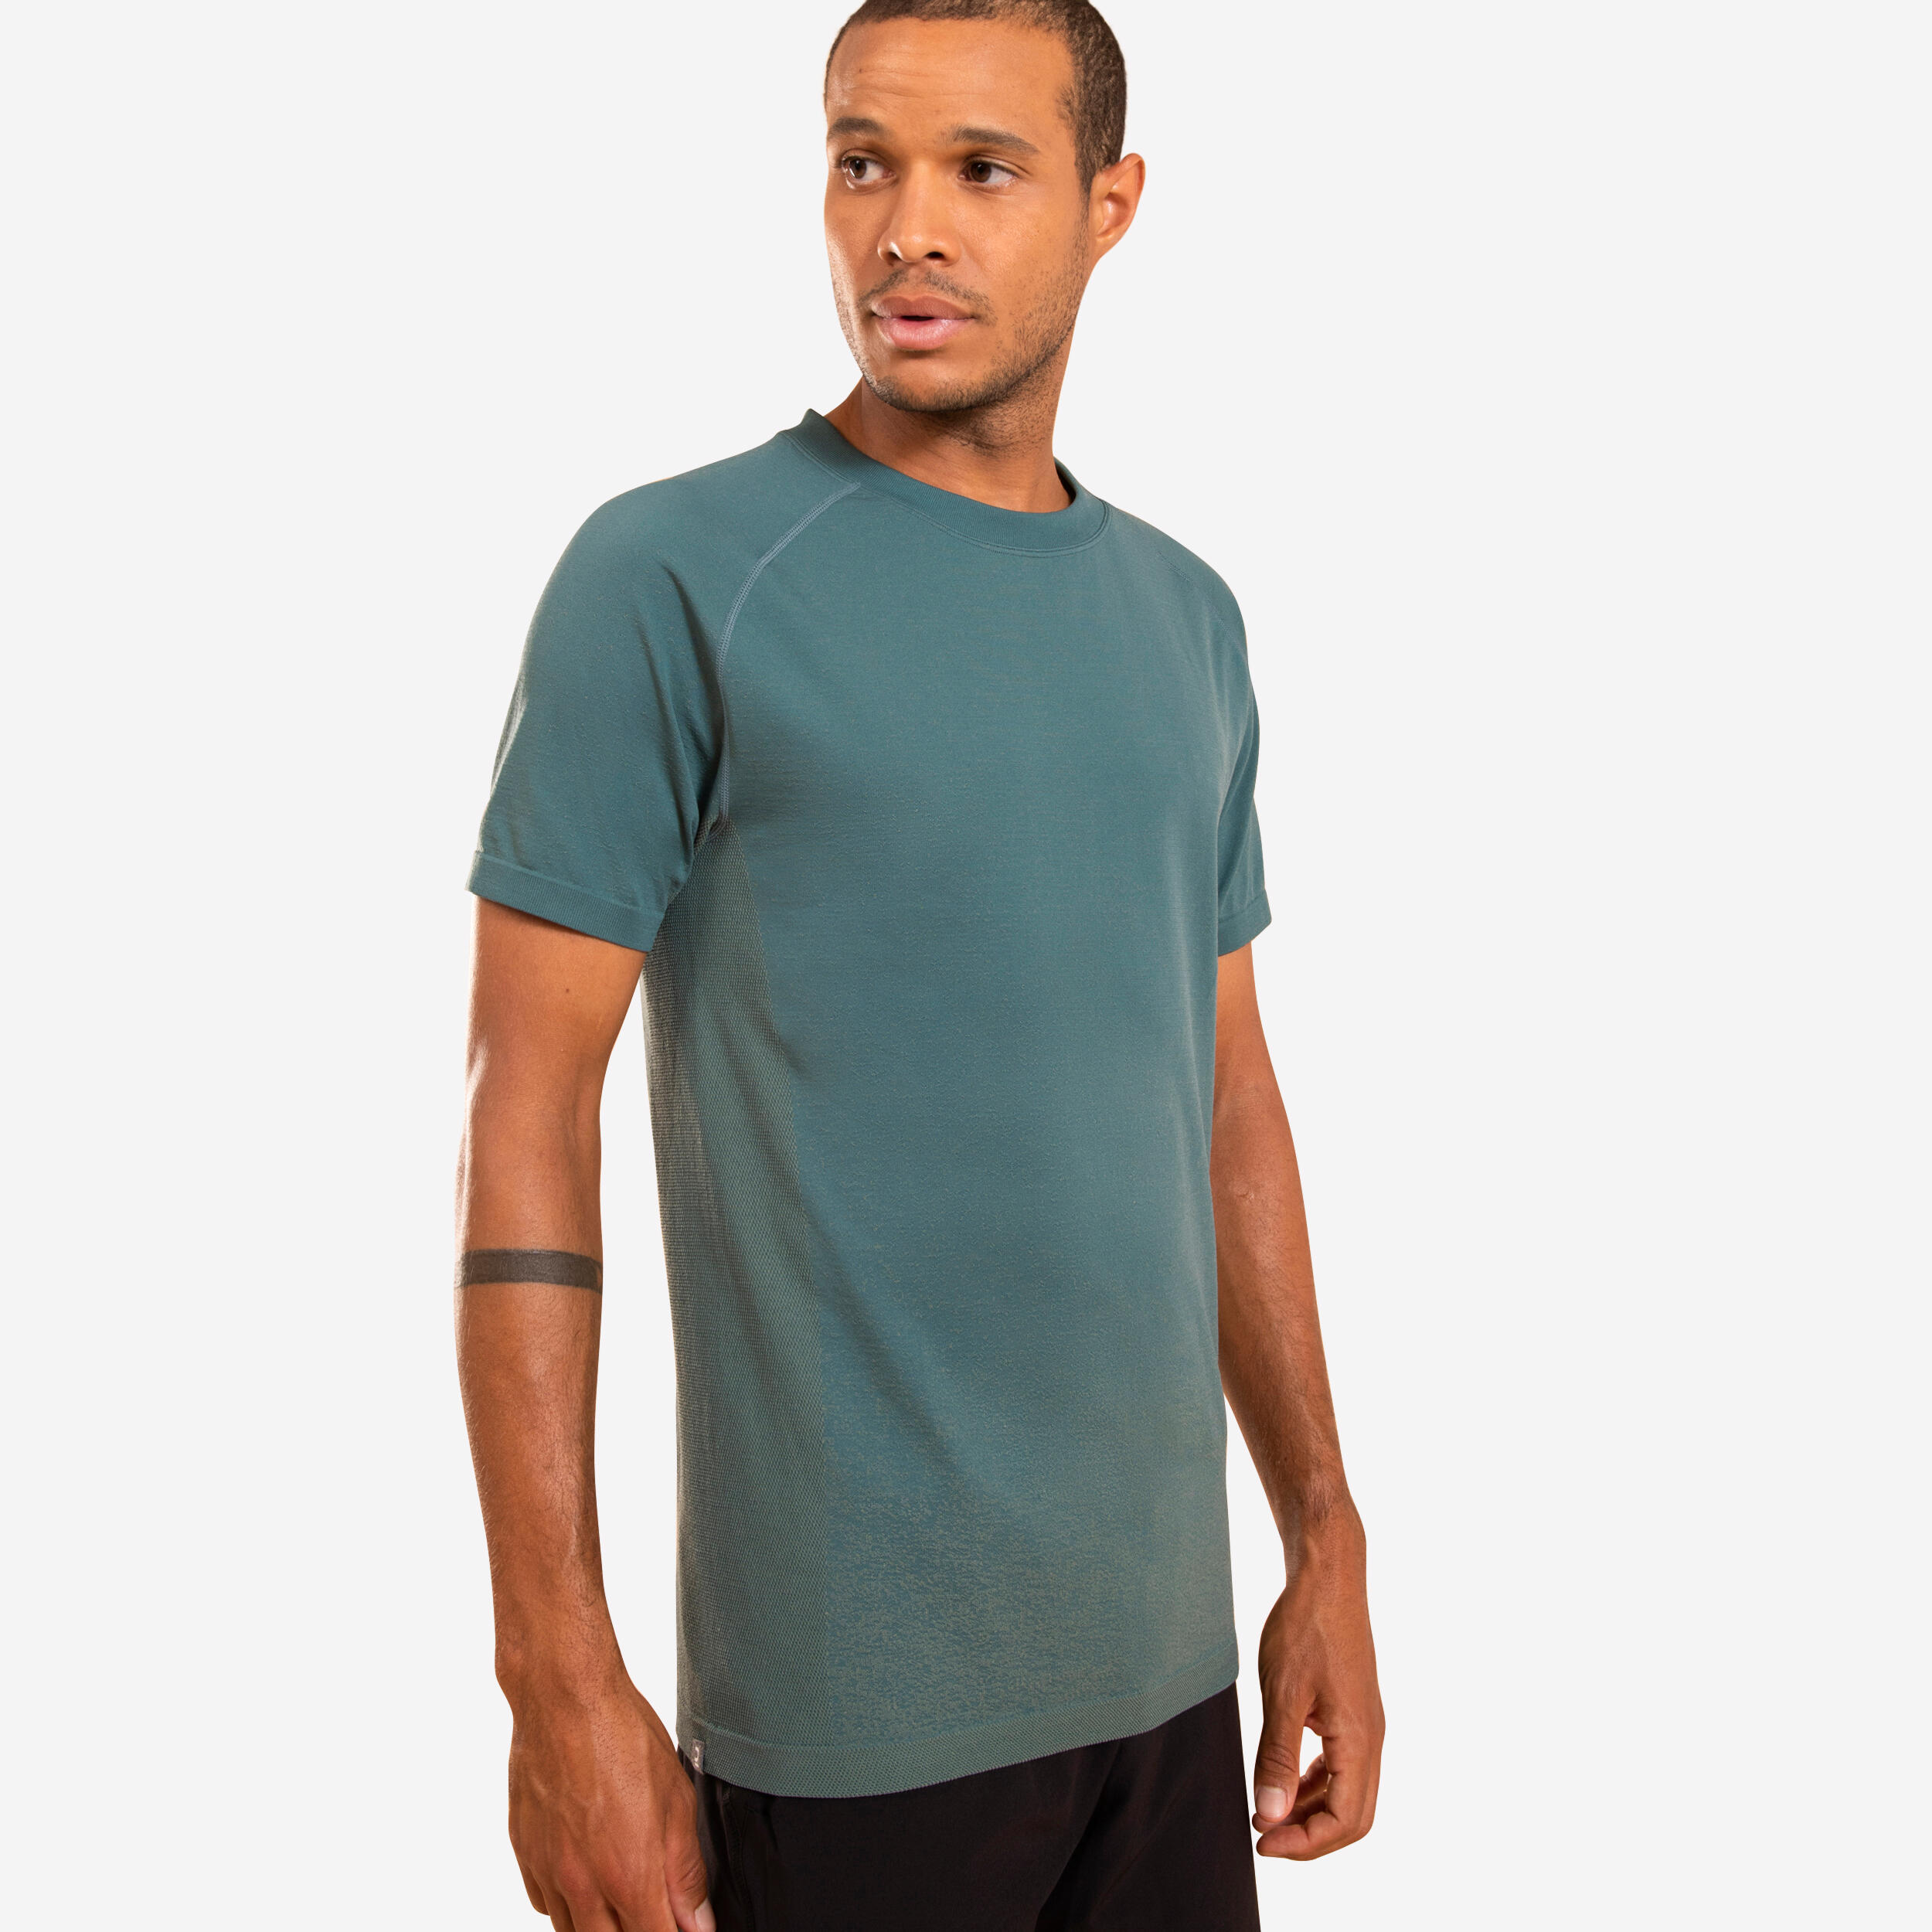 Dieses leichte und atmungsaktive T-Shirt mit der nahtlosen Seamless-Technologie begleitet Yogis auch bei anspruchsvollsten Haltungen.